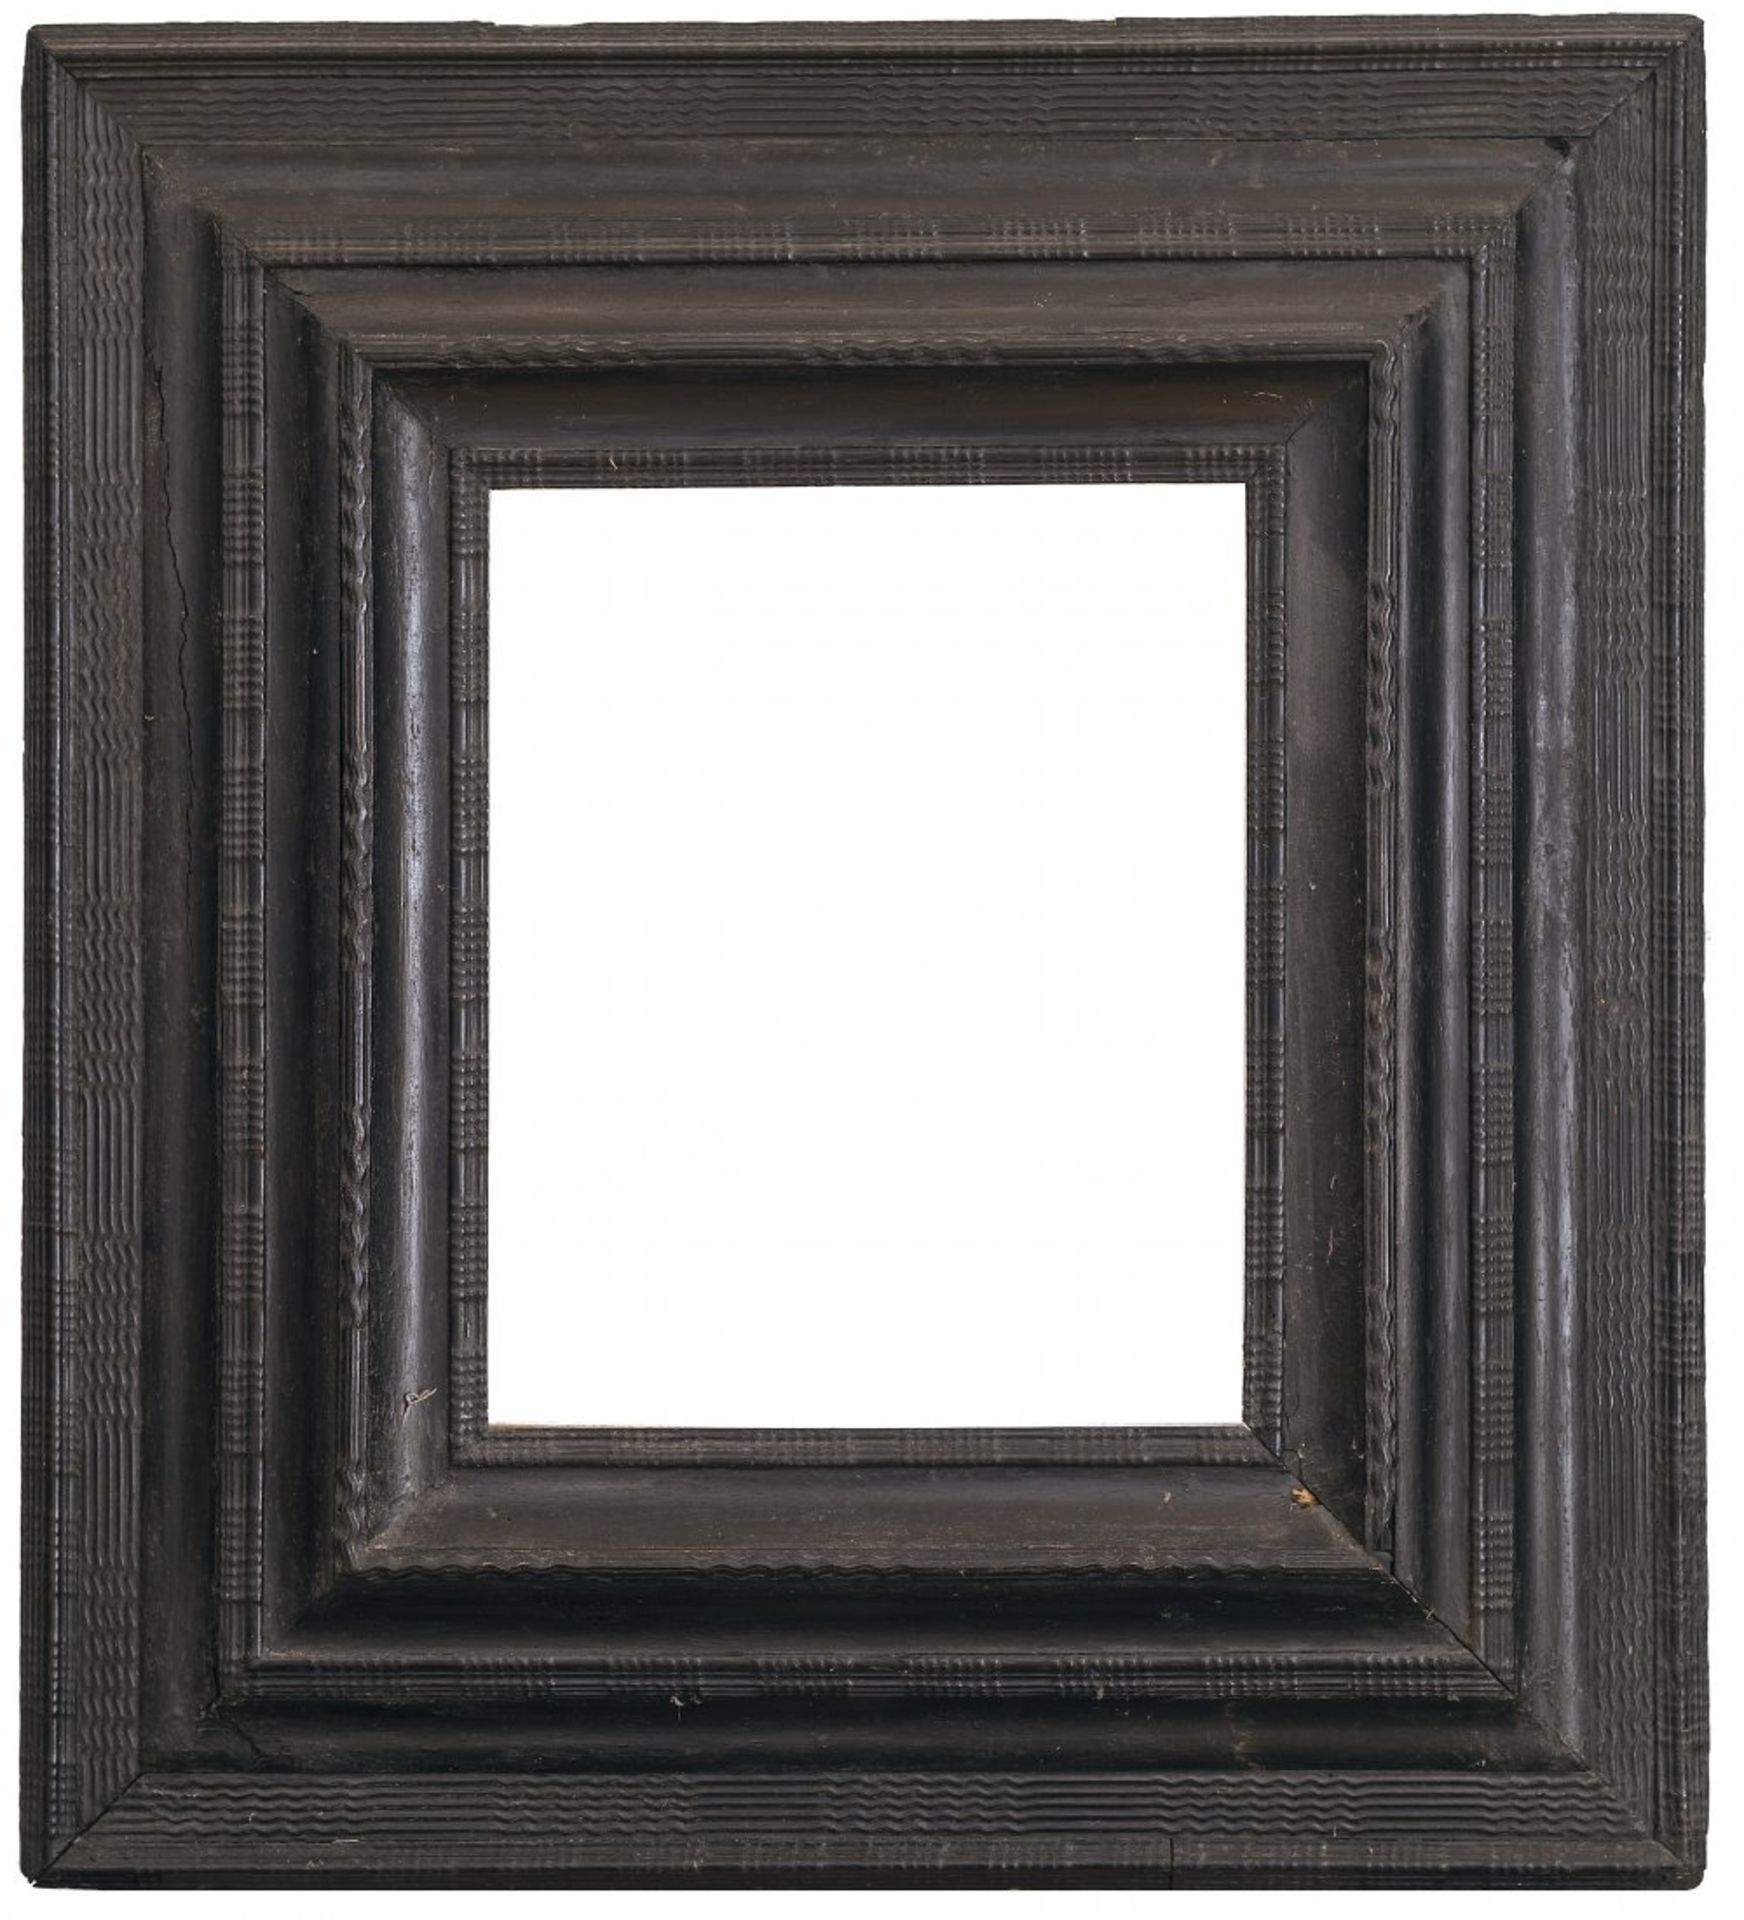 PlattenrahmenSpanien, 17. Jh. Getreppte Flammleisten. Holz, geschwärzt. Besch. 46 x 38,5 cm.Plate